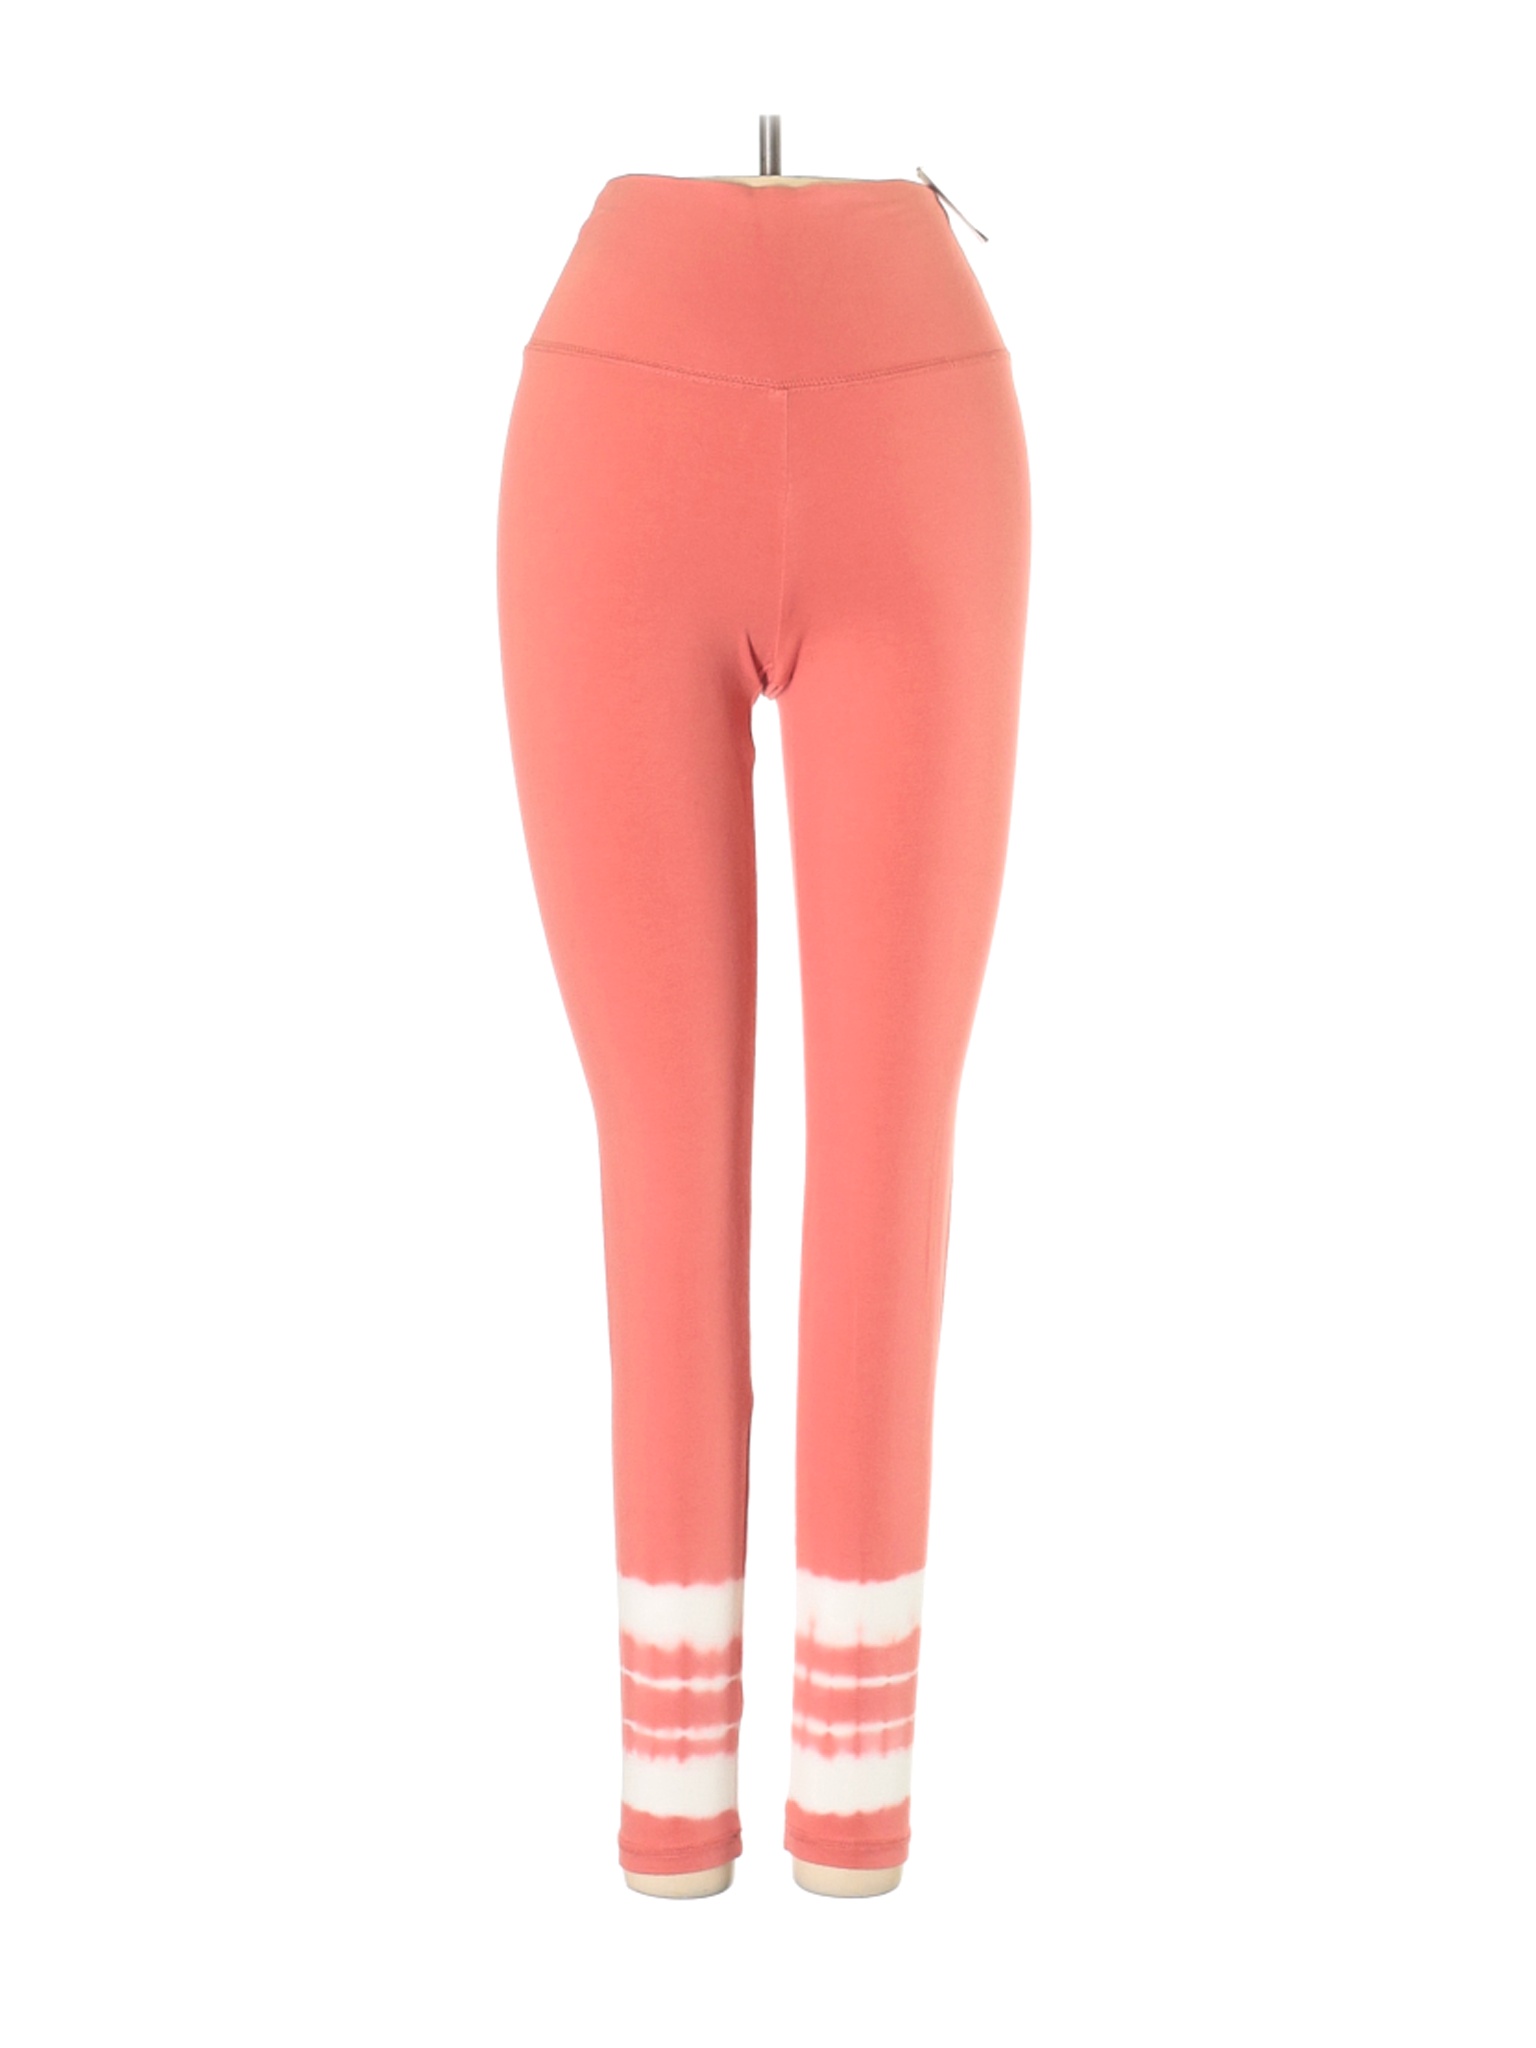 NWT Aerie Women Orange Active Pants XS | eBay